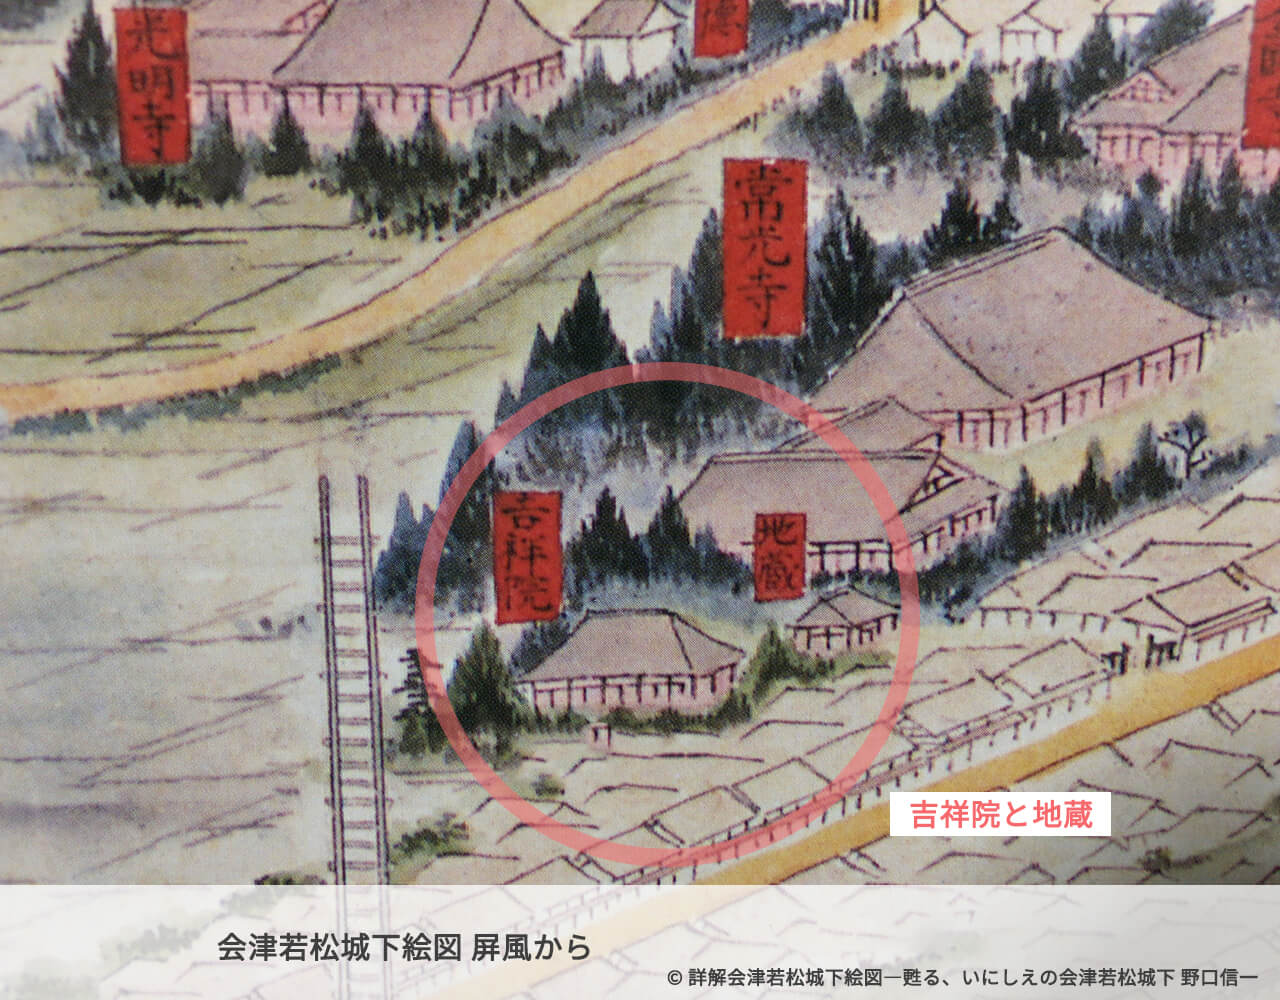 会津若松城下絵図屏風の吉祥院と七日町地蔵尊